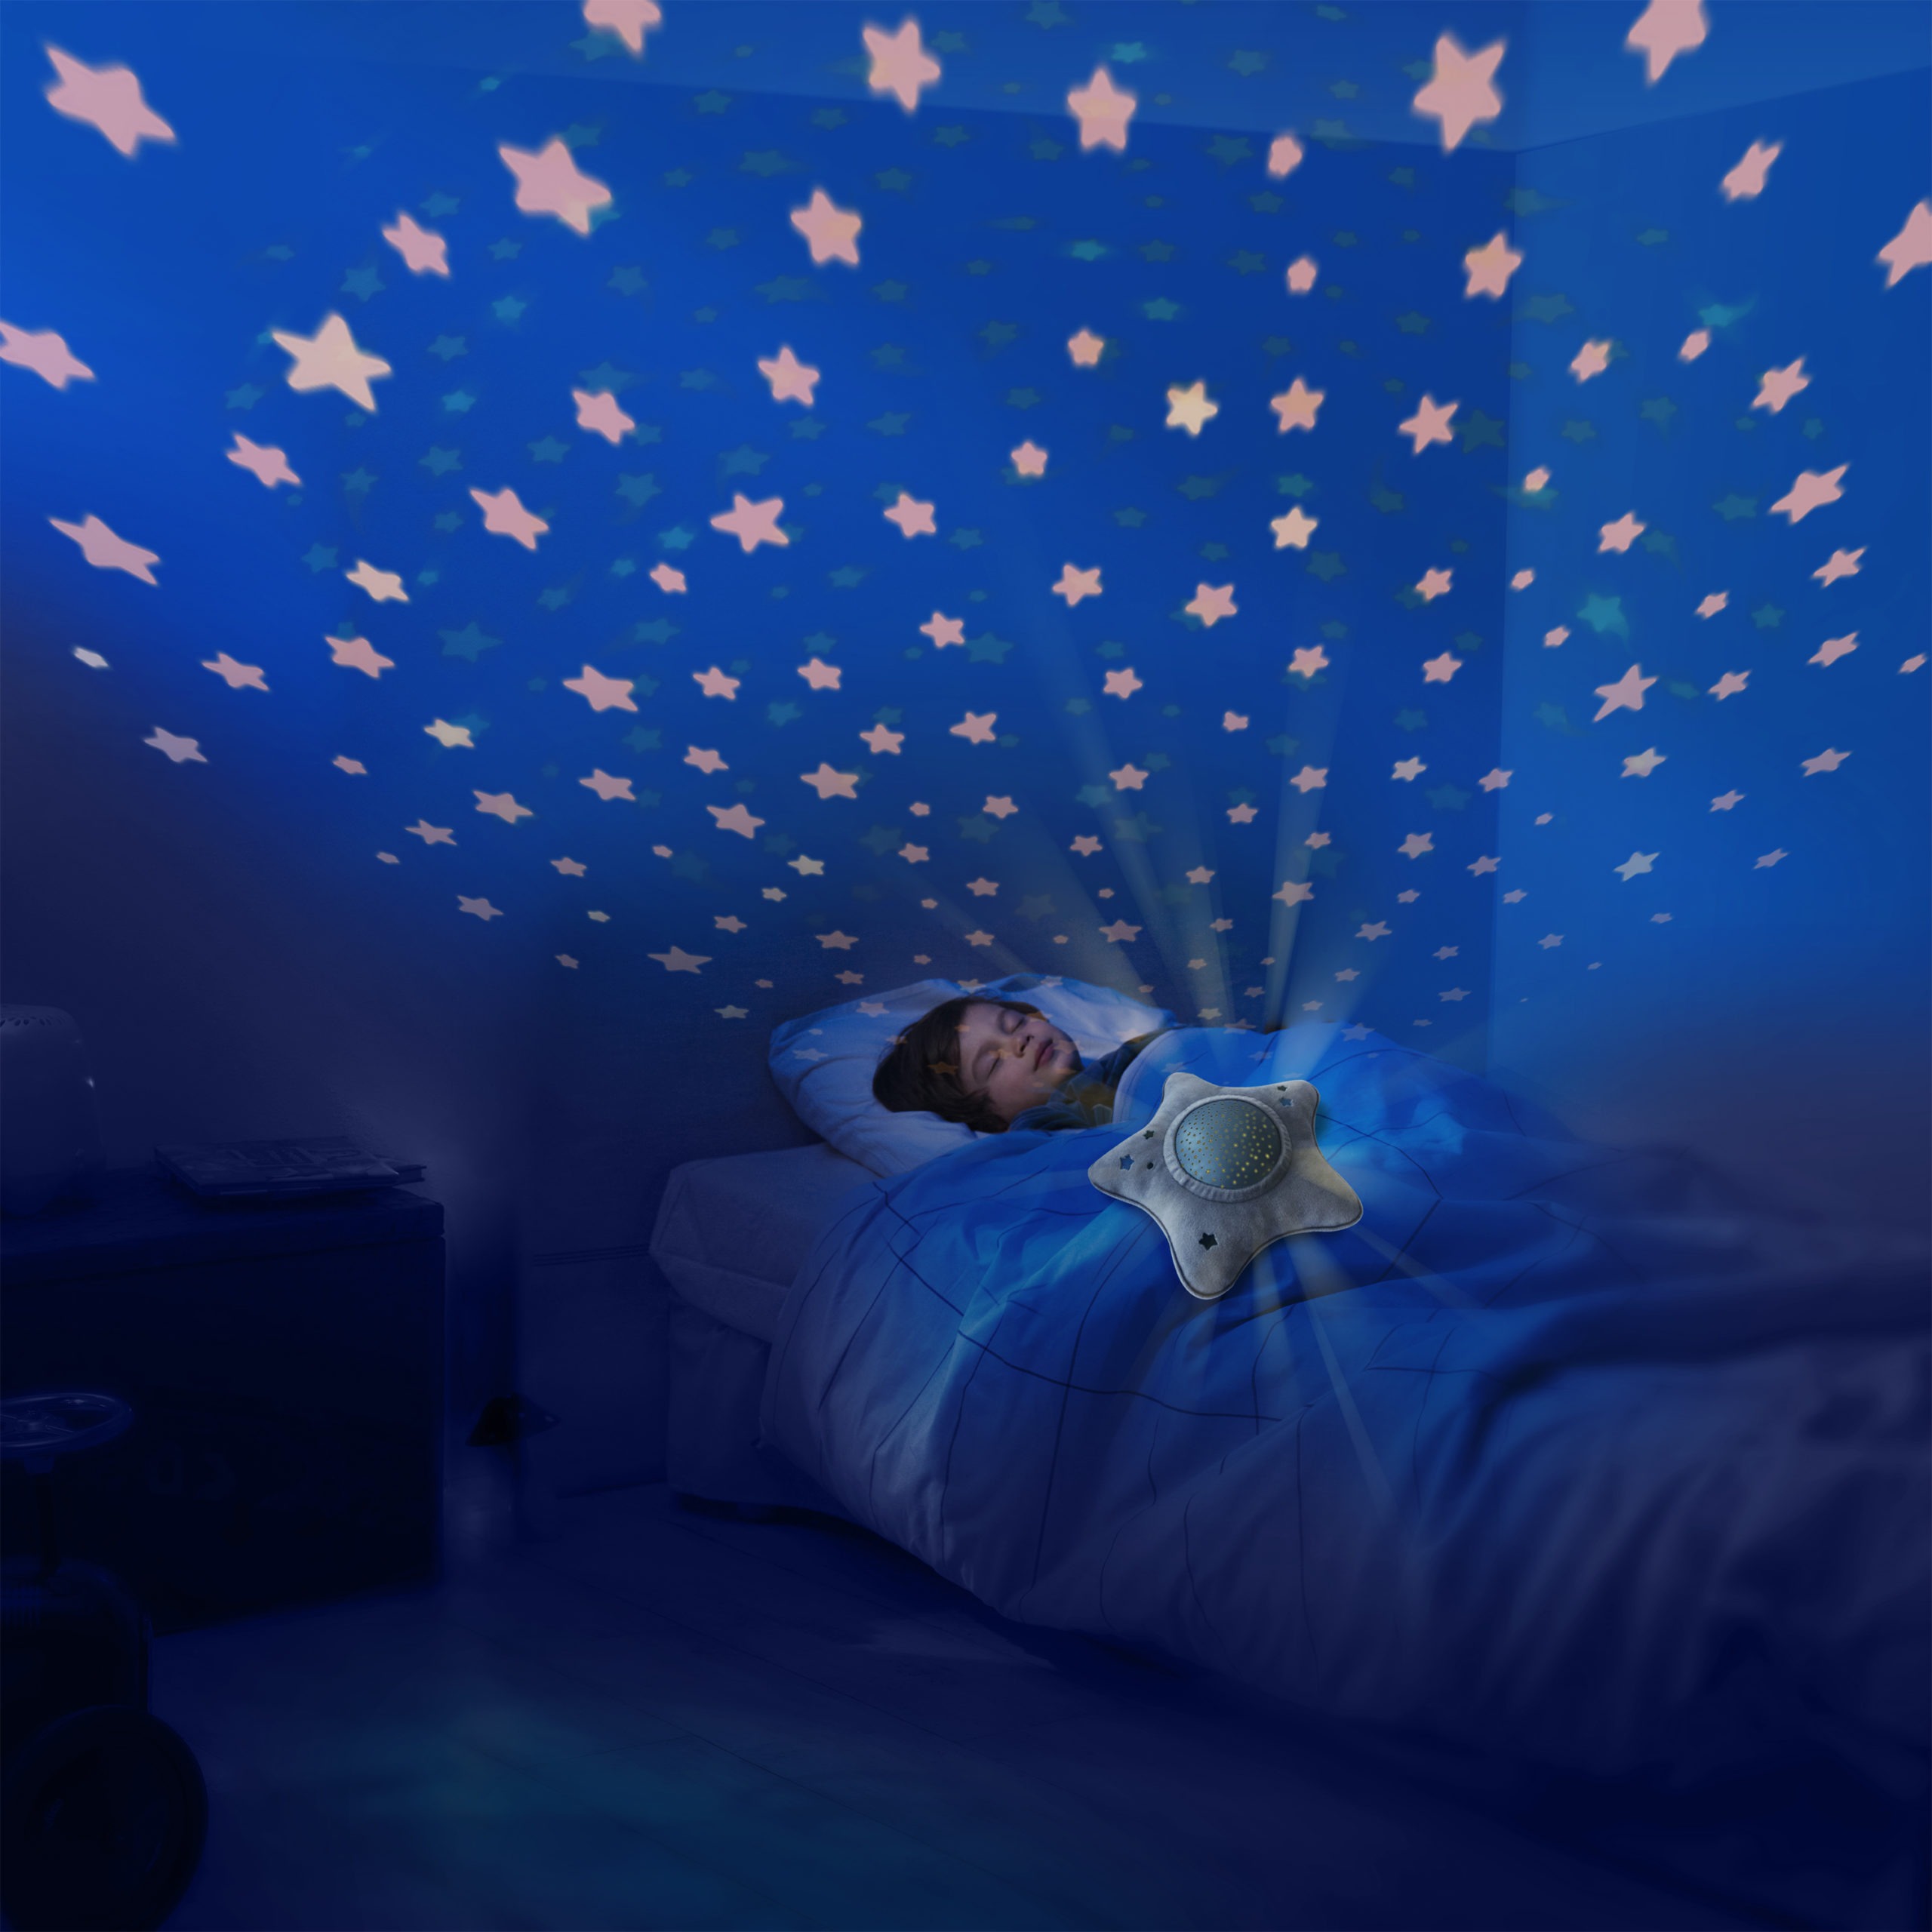 Un projecteur d'étoile musical pour s'endormir paisiblement - Pabobo